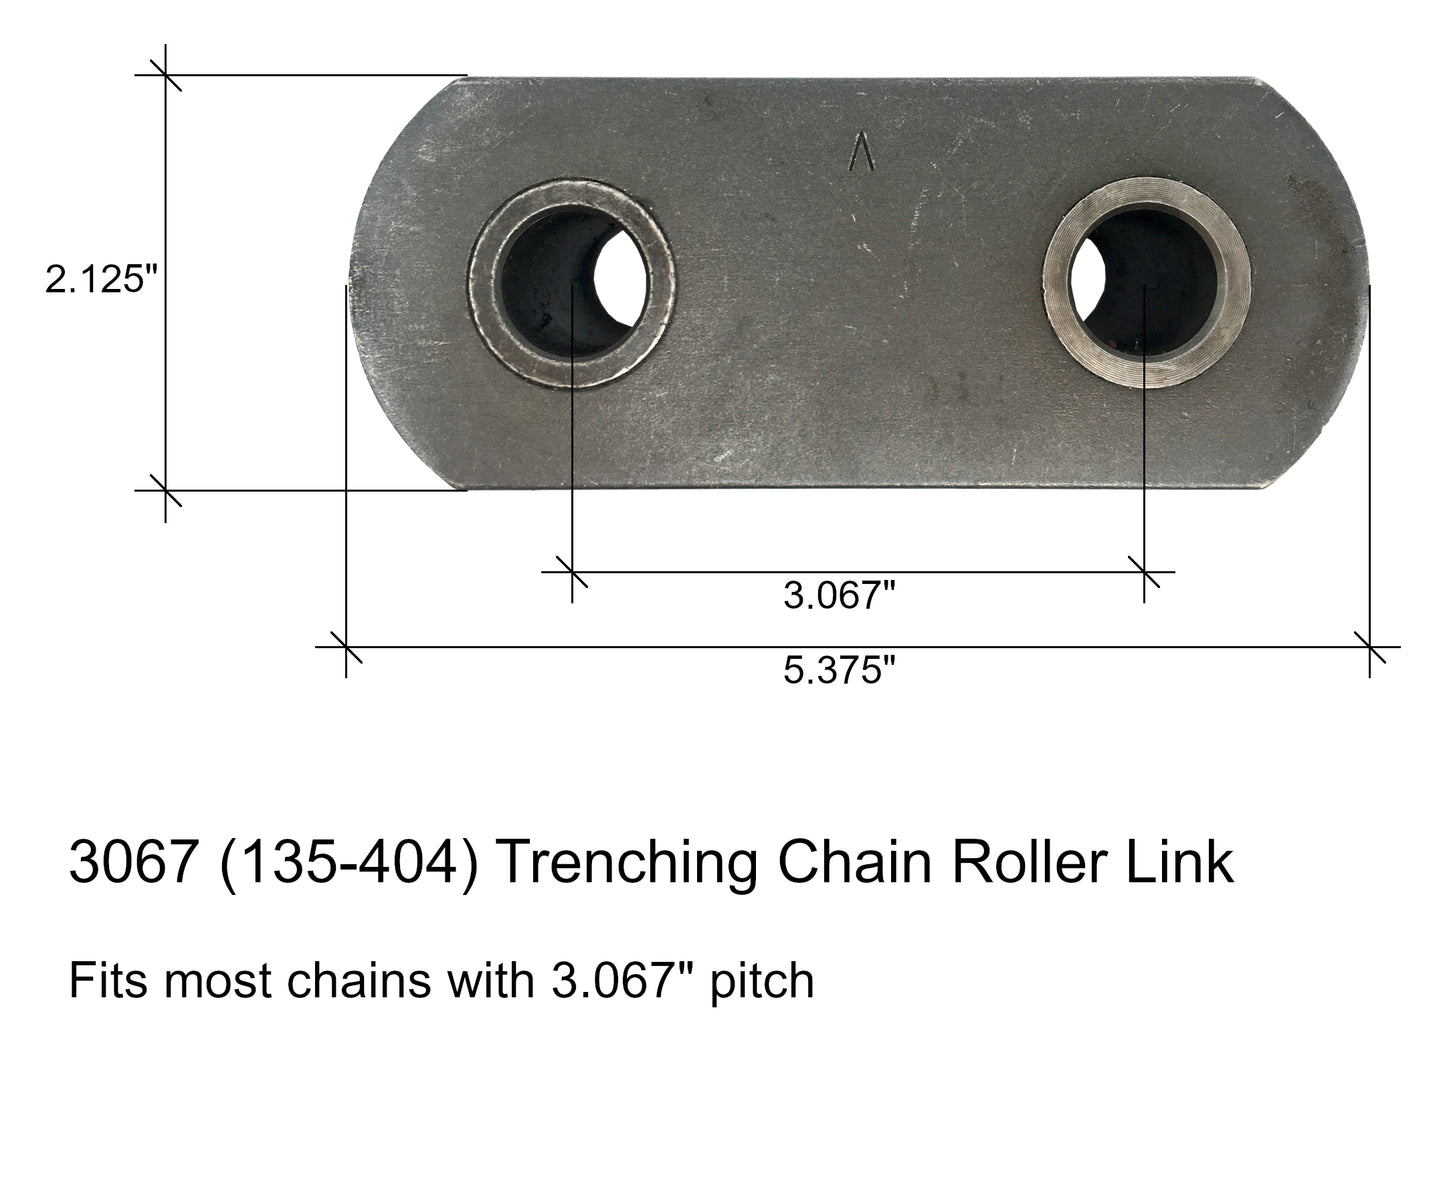 Maillon de rouleau de chaîne de tranchée, convient aux chaînes avec pas de 3,067" - 135-404, 3067RL